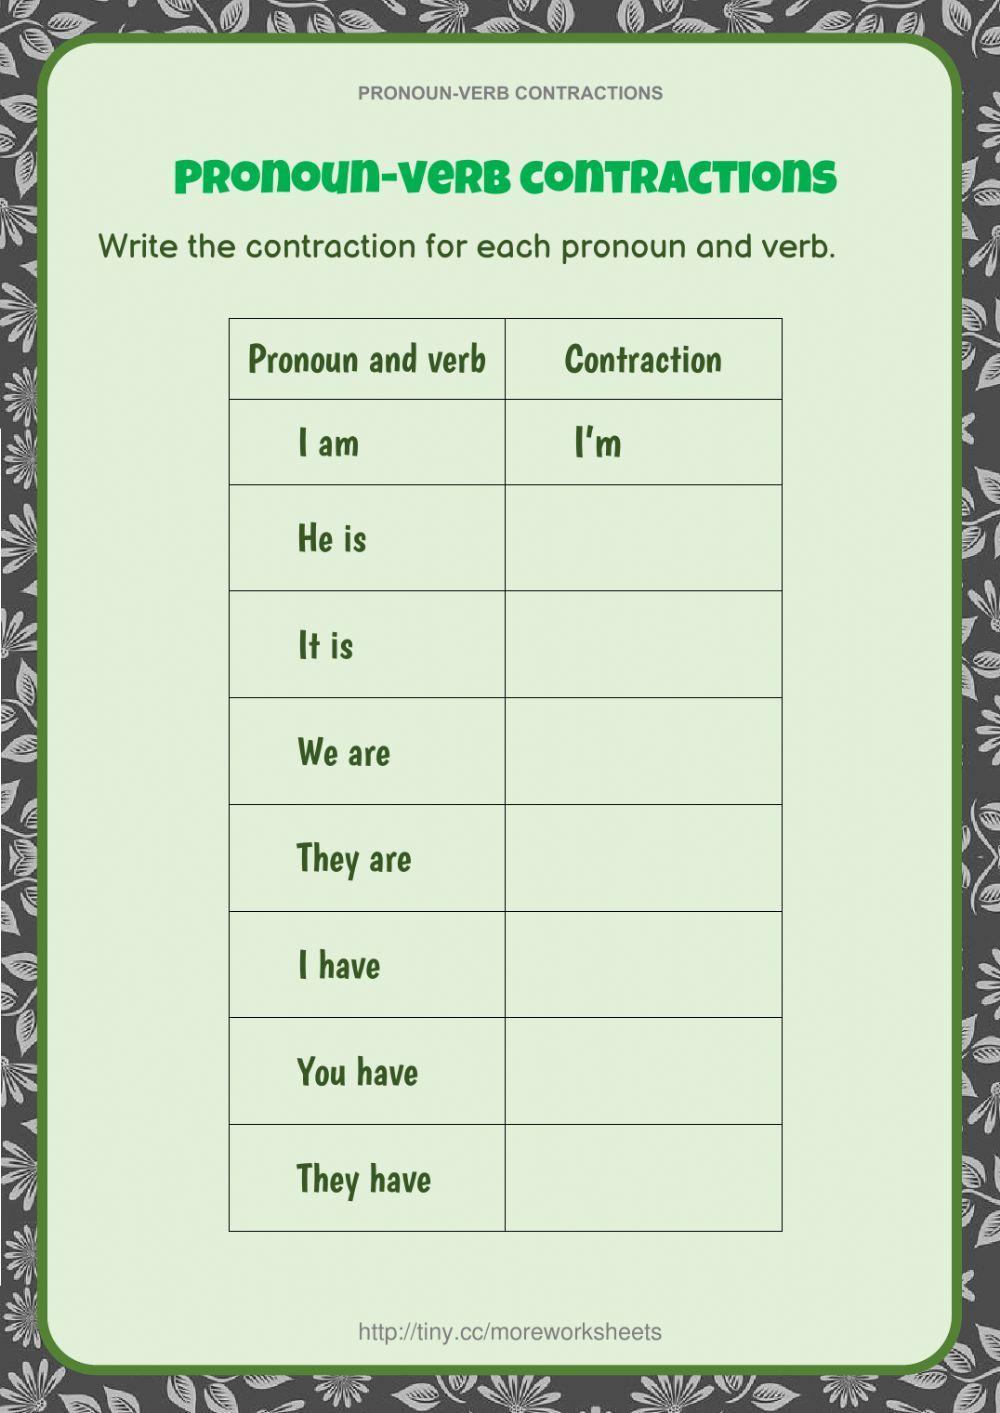 Pronoun-verb Contractions